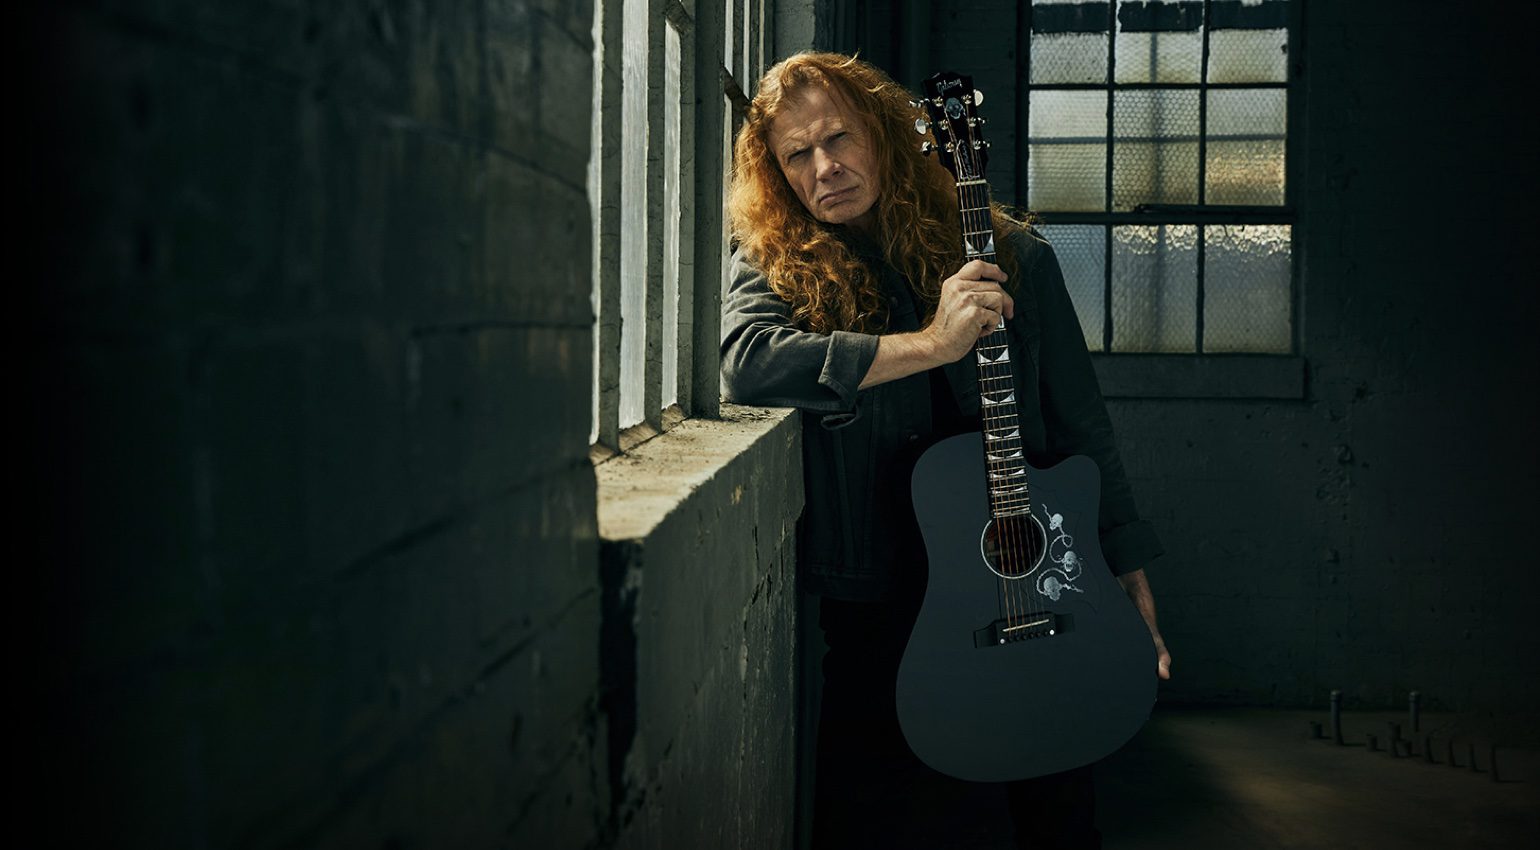 Gibson Dave Mustaine Songwriter publié avec des variantes signées et non signées